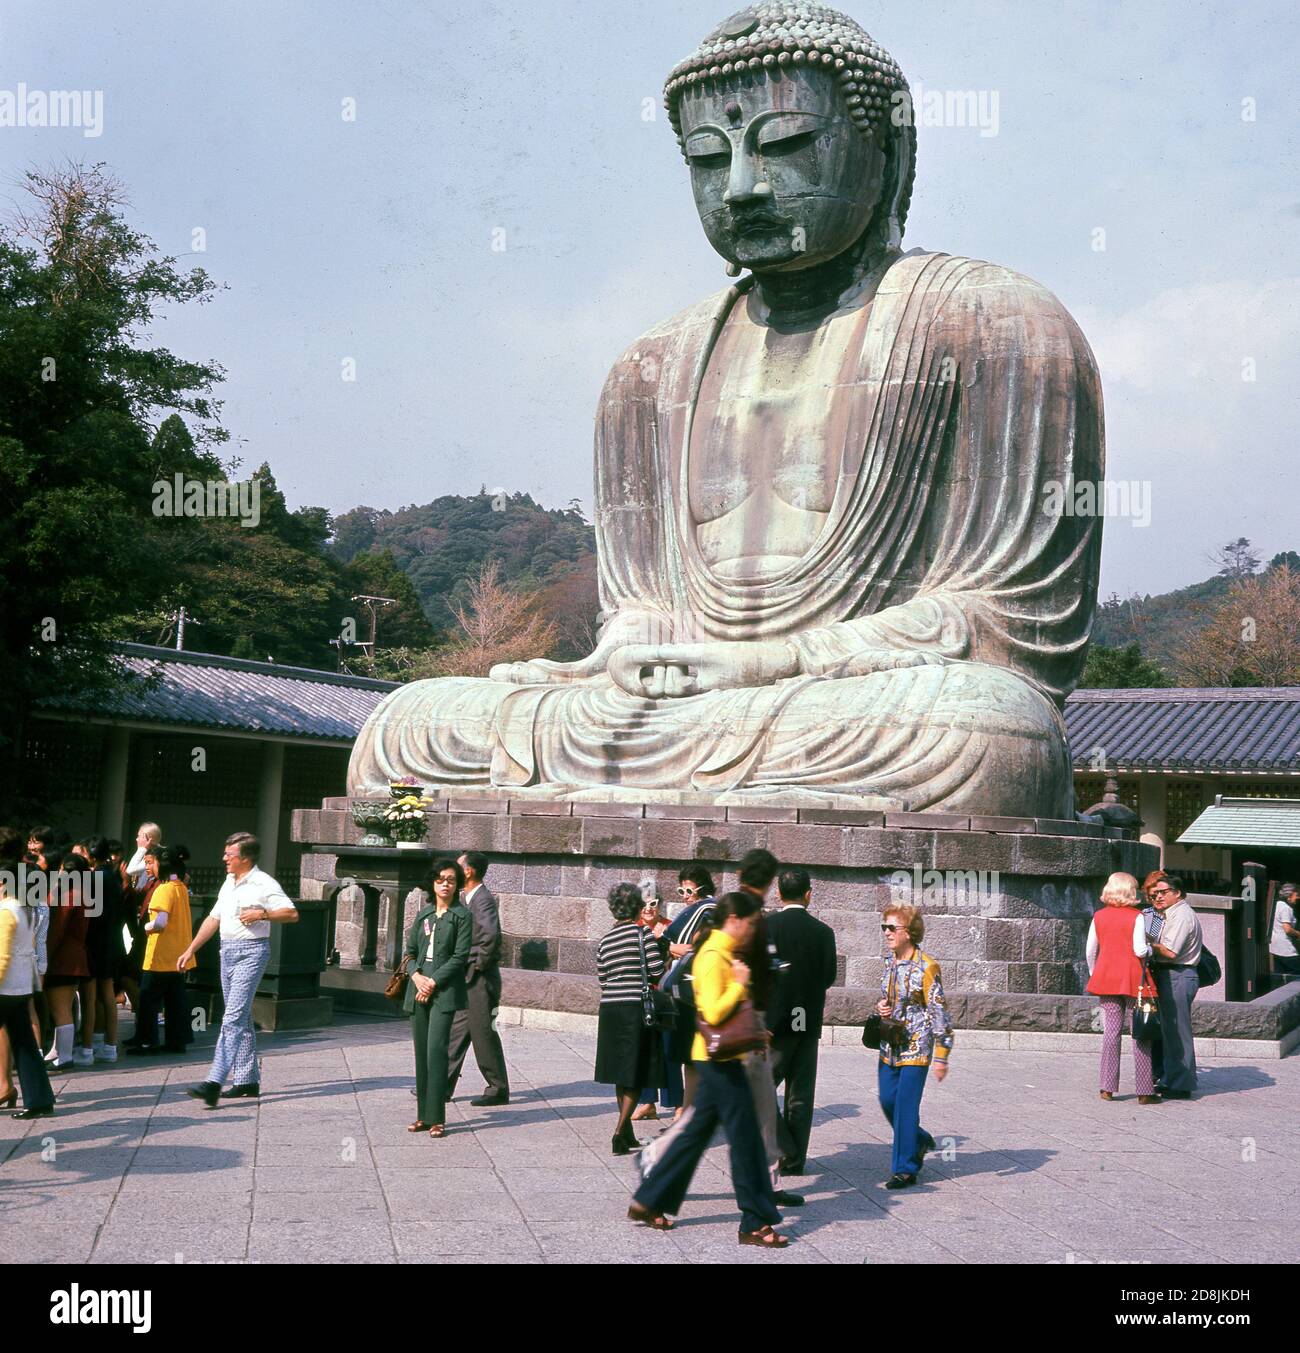 1960, histórico, visitantes en el templo budista en Kotoku-in, Kamakura, Kanagawa, Japón, hogar del Daibutsu o Gran Buda, una estatua gigante de bronce y una de las atracciones turísticas más visitadas del país. La estatua data del siglo 13 y es el segundo Buda de bronce más alto de Japón. Foto de stock